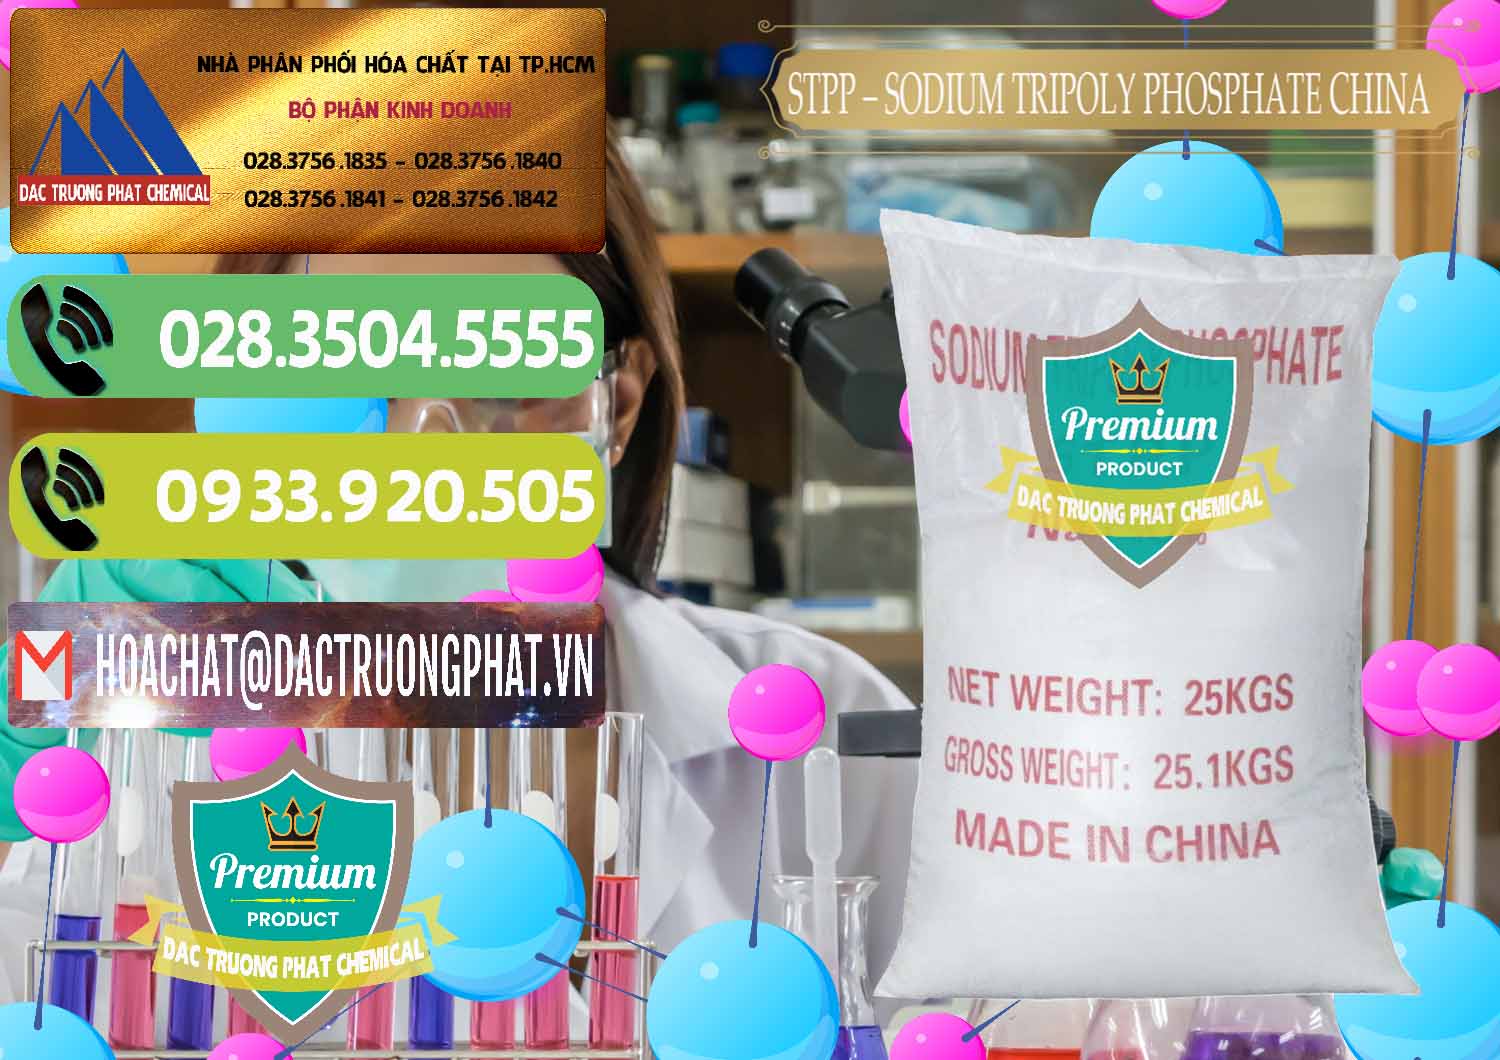 Cty chuyên phân phối ( bán ) Sodium Tripoly Phosphate - STPP 96% Chữ Đỏ Trung Quốc China - 0155 - Cty chuyên nhập khẩu _ cung cấp hóa chất tại TP.HCM - hoachatmientay.vn